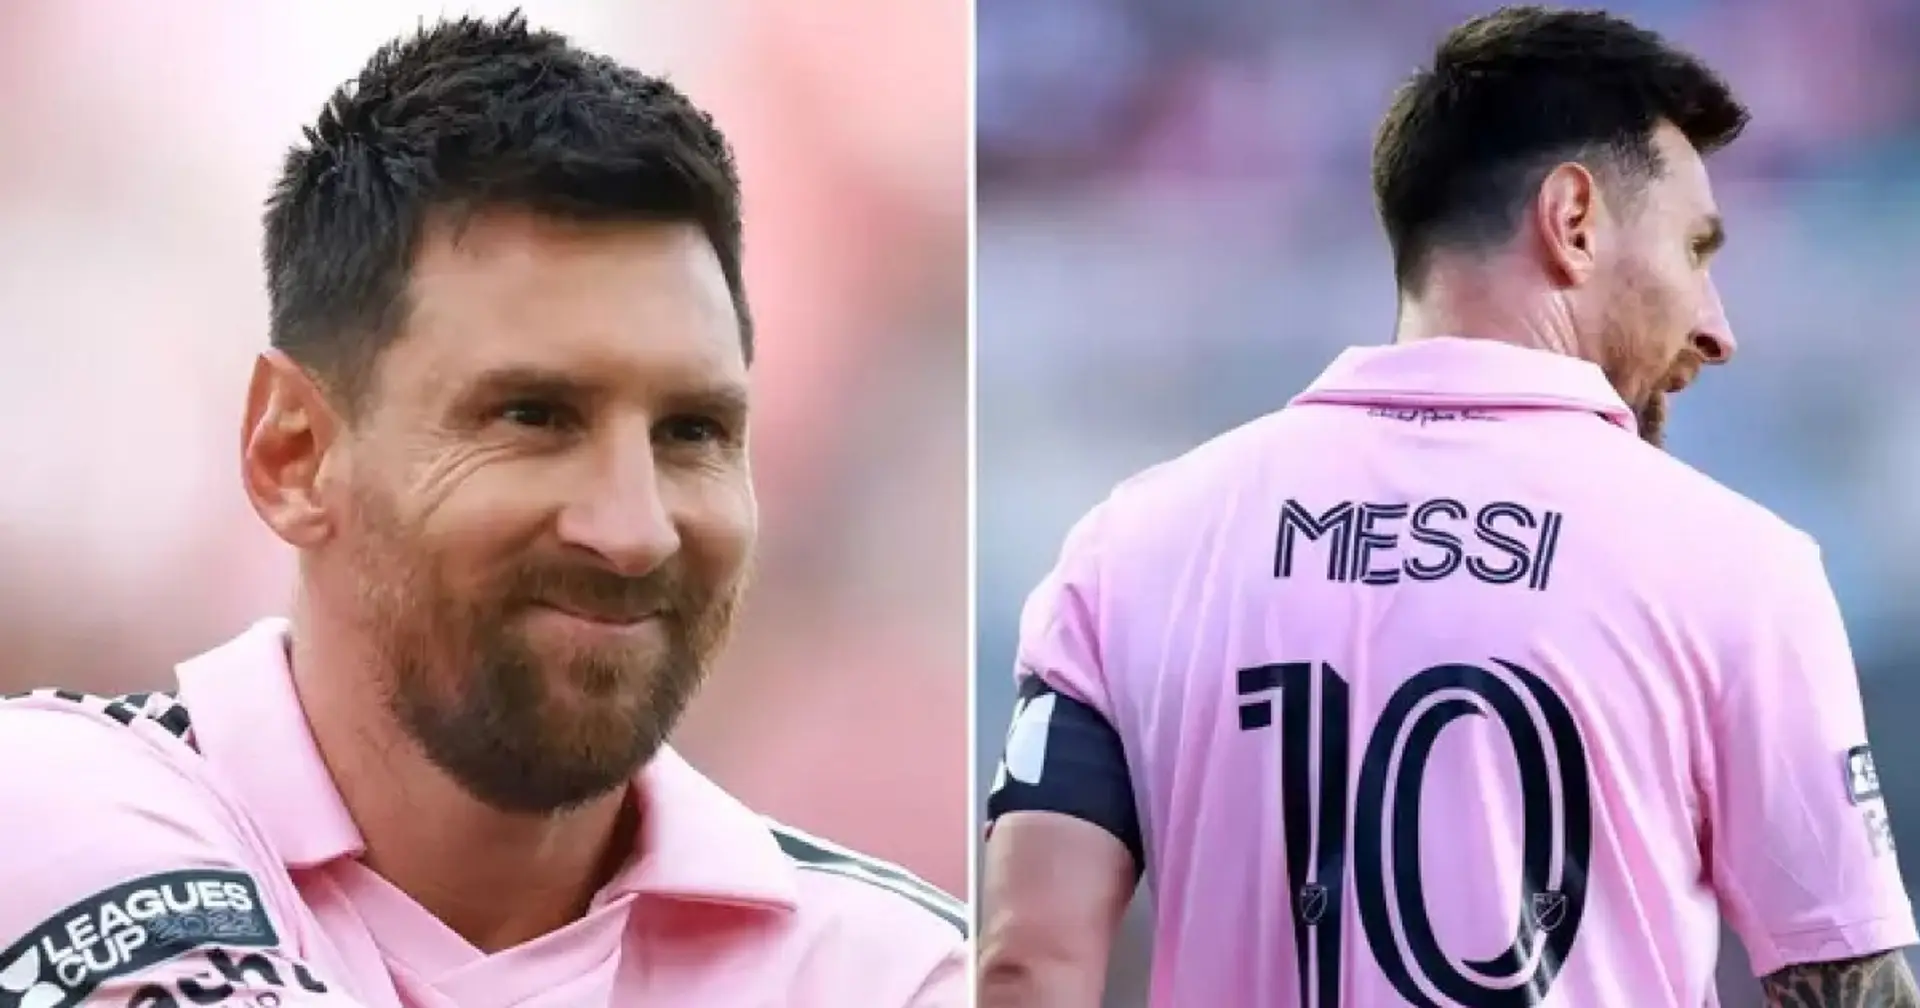 Messi ist gerade in den USA angekommen und hat sofort mit dem Toreschießen begonnen: Wenn Leo so weitermacht wie bisher, könnte er gleich fünf MLS-Rekorde brechen